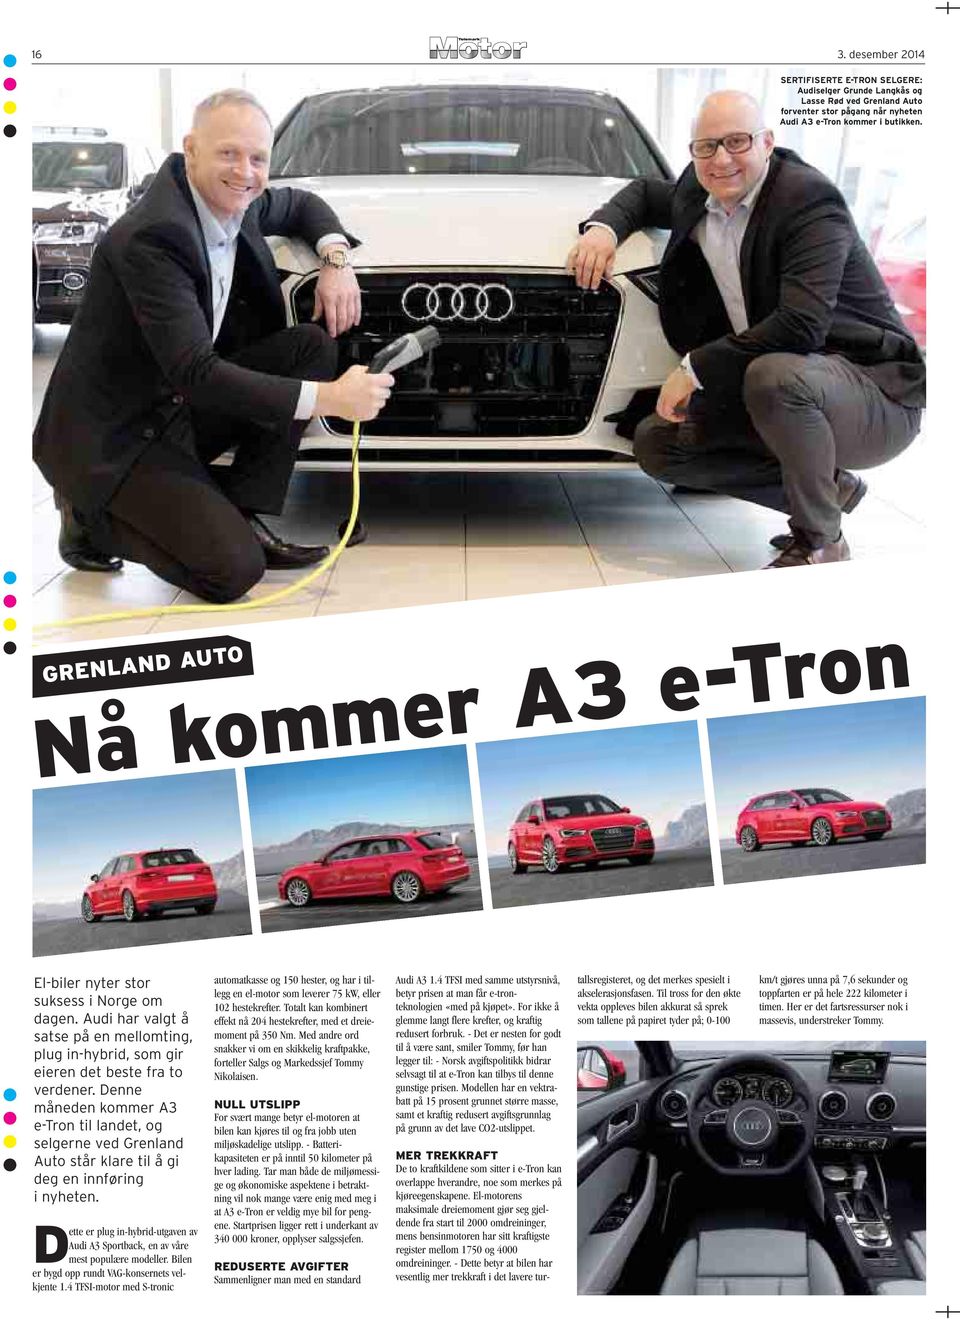 Denne måneden kommer A3 e-tron til landet, og selgerne ved Grenland Auto står klare til å gi deg en innføring i nyheten.